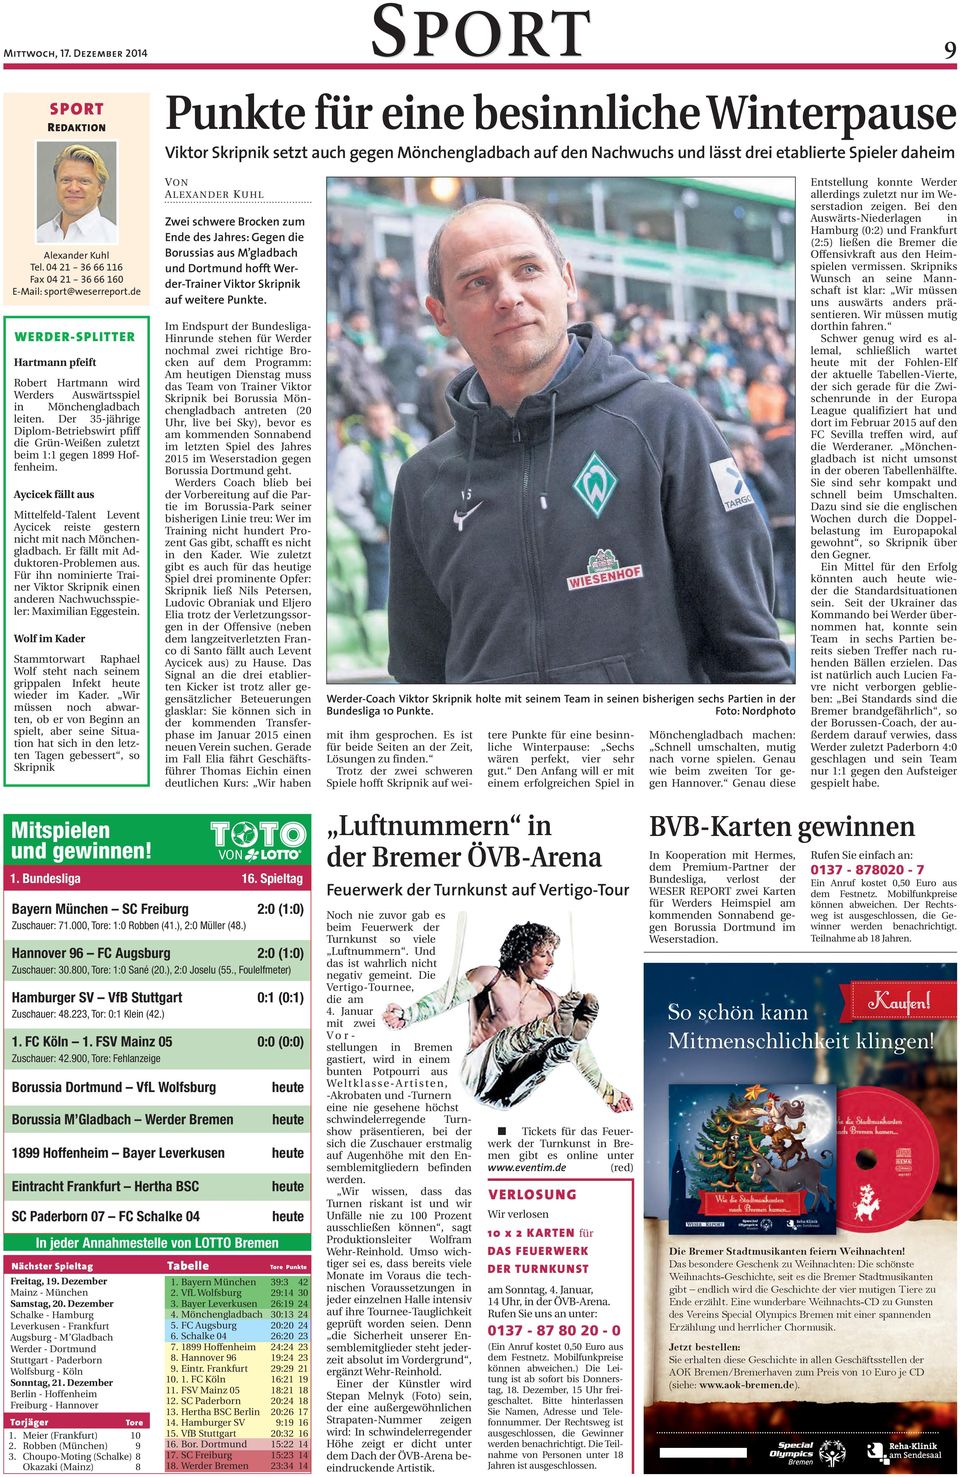 04 21-36 66 116 Fax 04 21-36 66 160 E-Ma port@weerreport.de WERDER-SPLITTER Hartmann pfeift Robert Hartmann wird Werder Auwärtpiel in Mönchengladbach leiten.